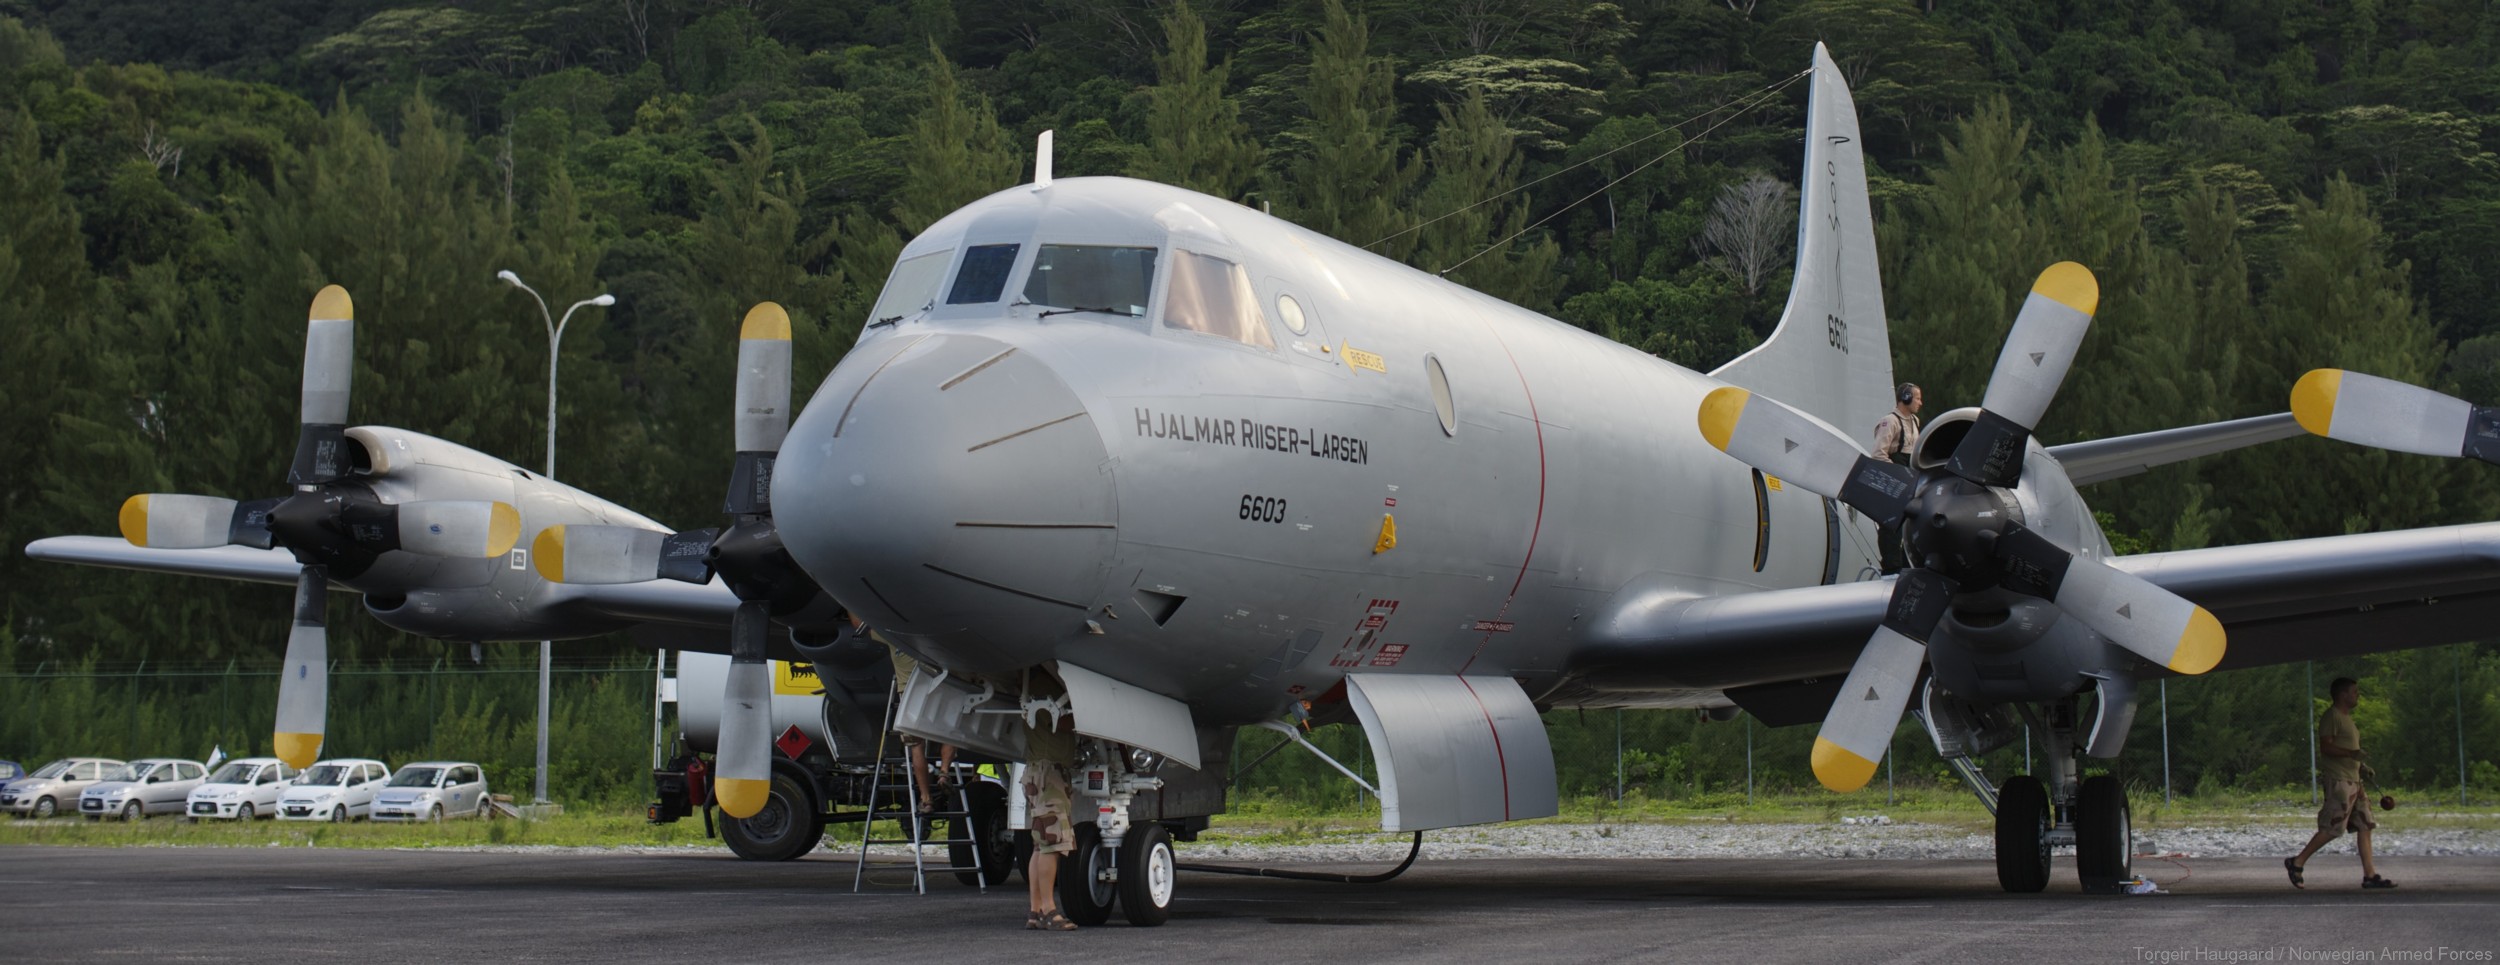 lockheed p-3n orion hjalmar riiser larsen 6603 patrol royal norwegian air force 07